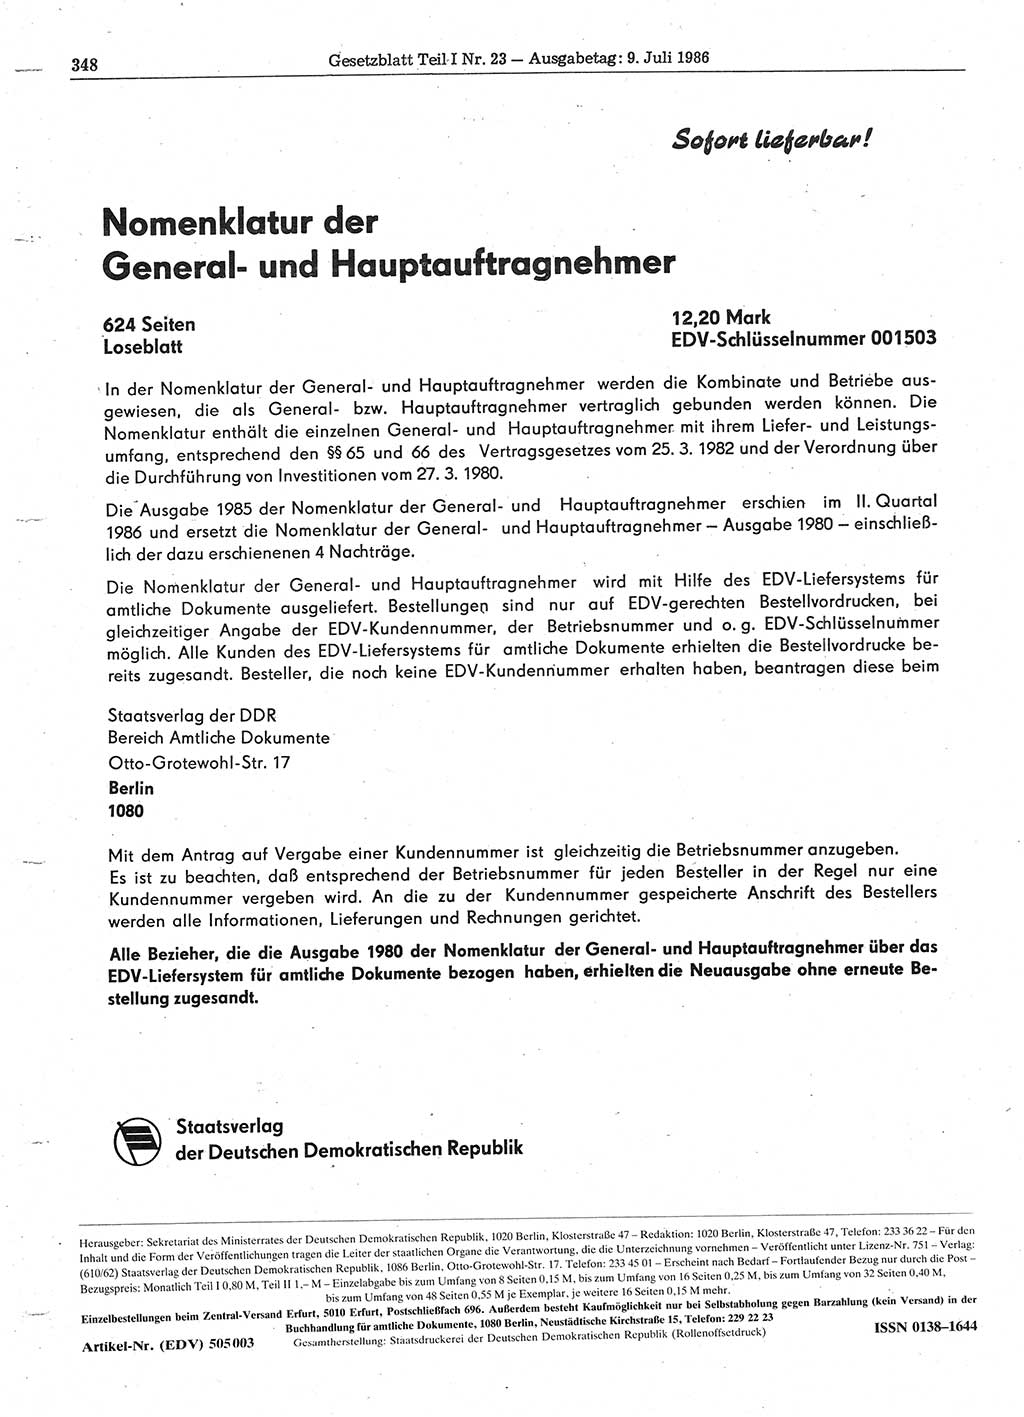 Gesetzblatt (GBl.) der Deutschen Demokratischen Republik (DDR) Teil Ⅰ 1986, Seite 348 (GBl. DDR Ⅰ 1986, S. 348)